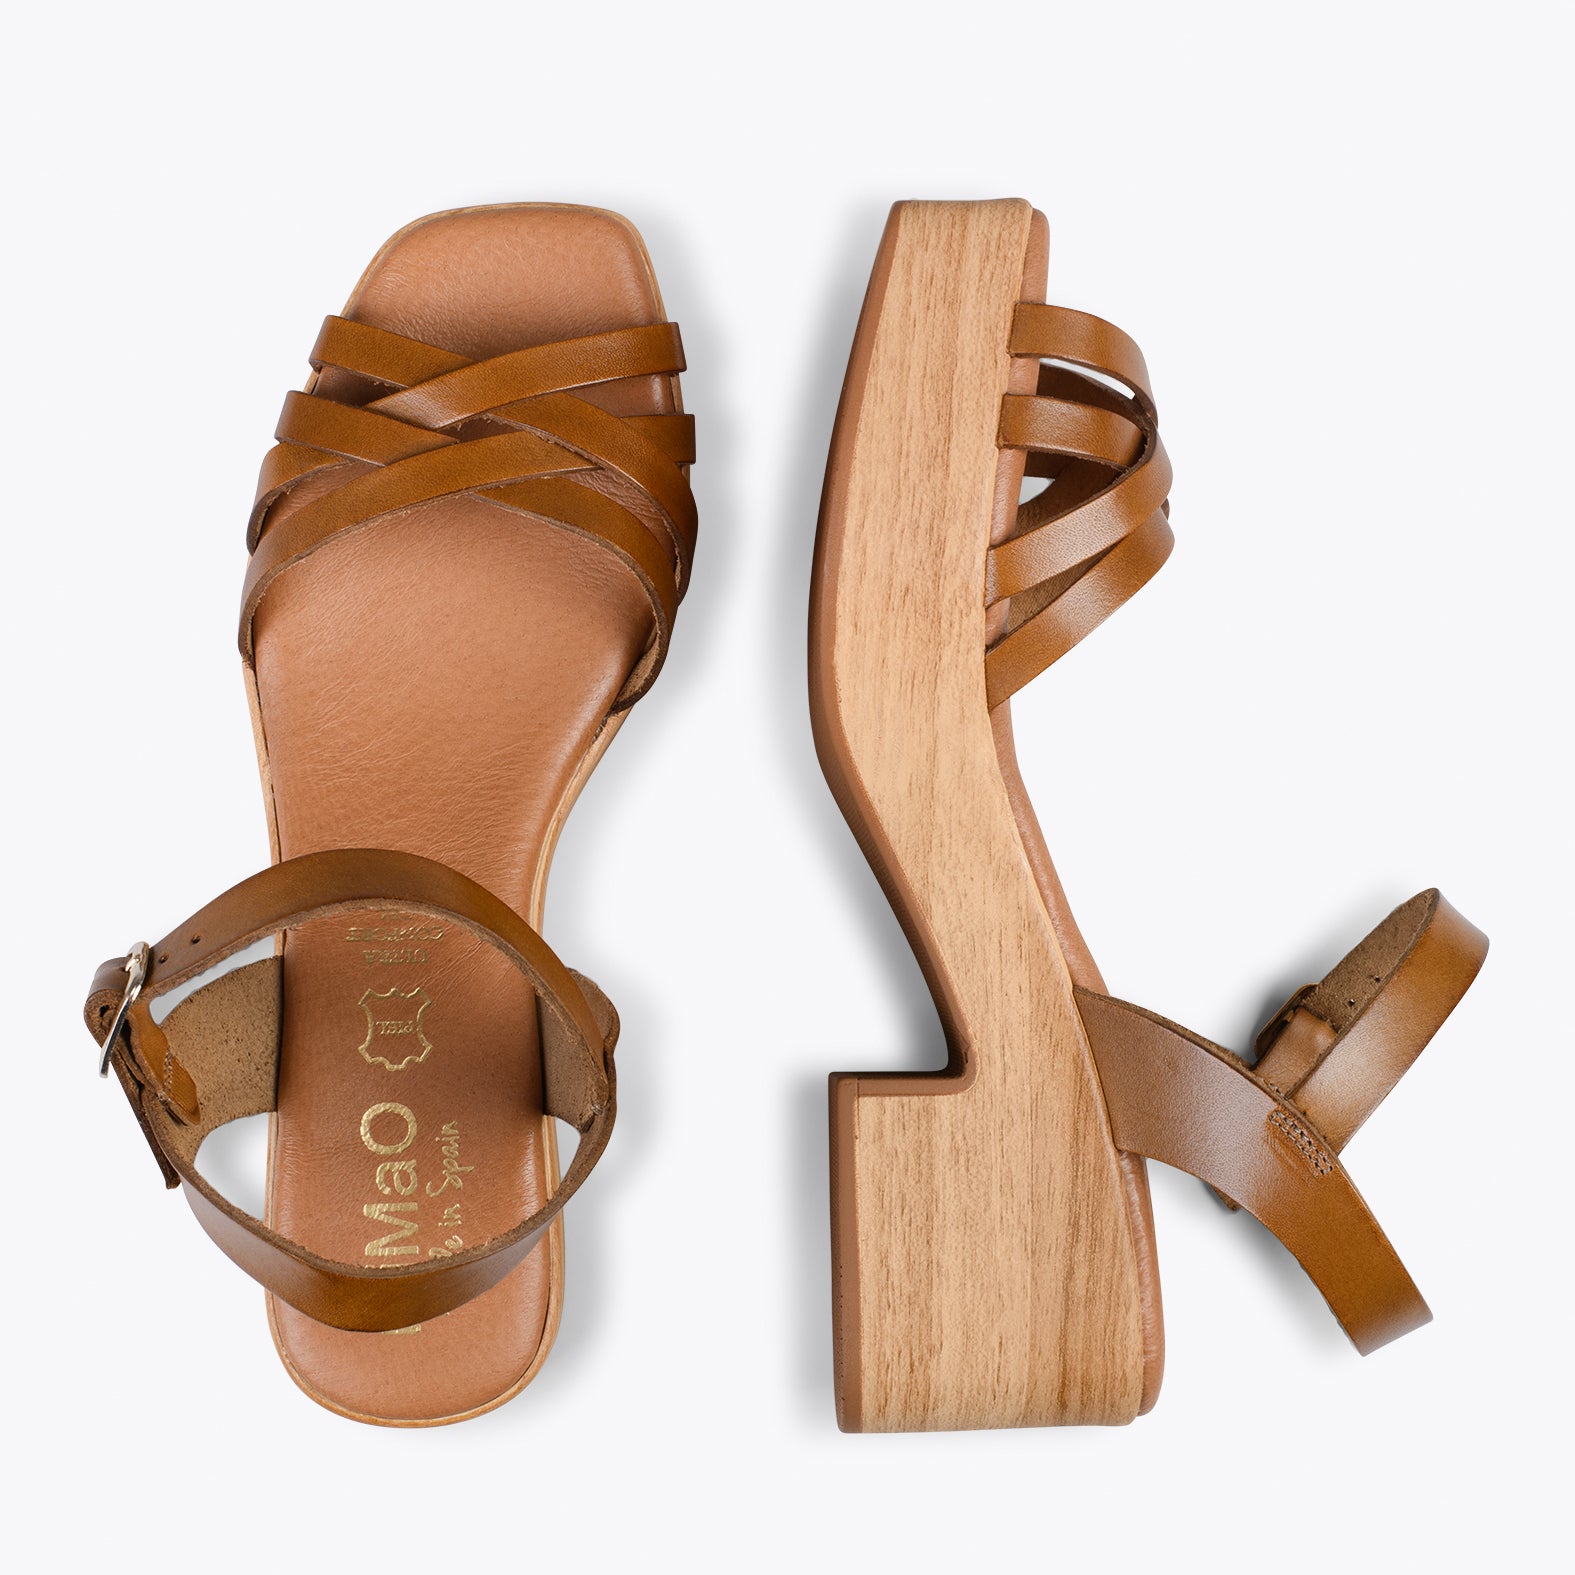 WOOD – Sandalias imitación madera con tiras CAMEL